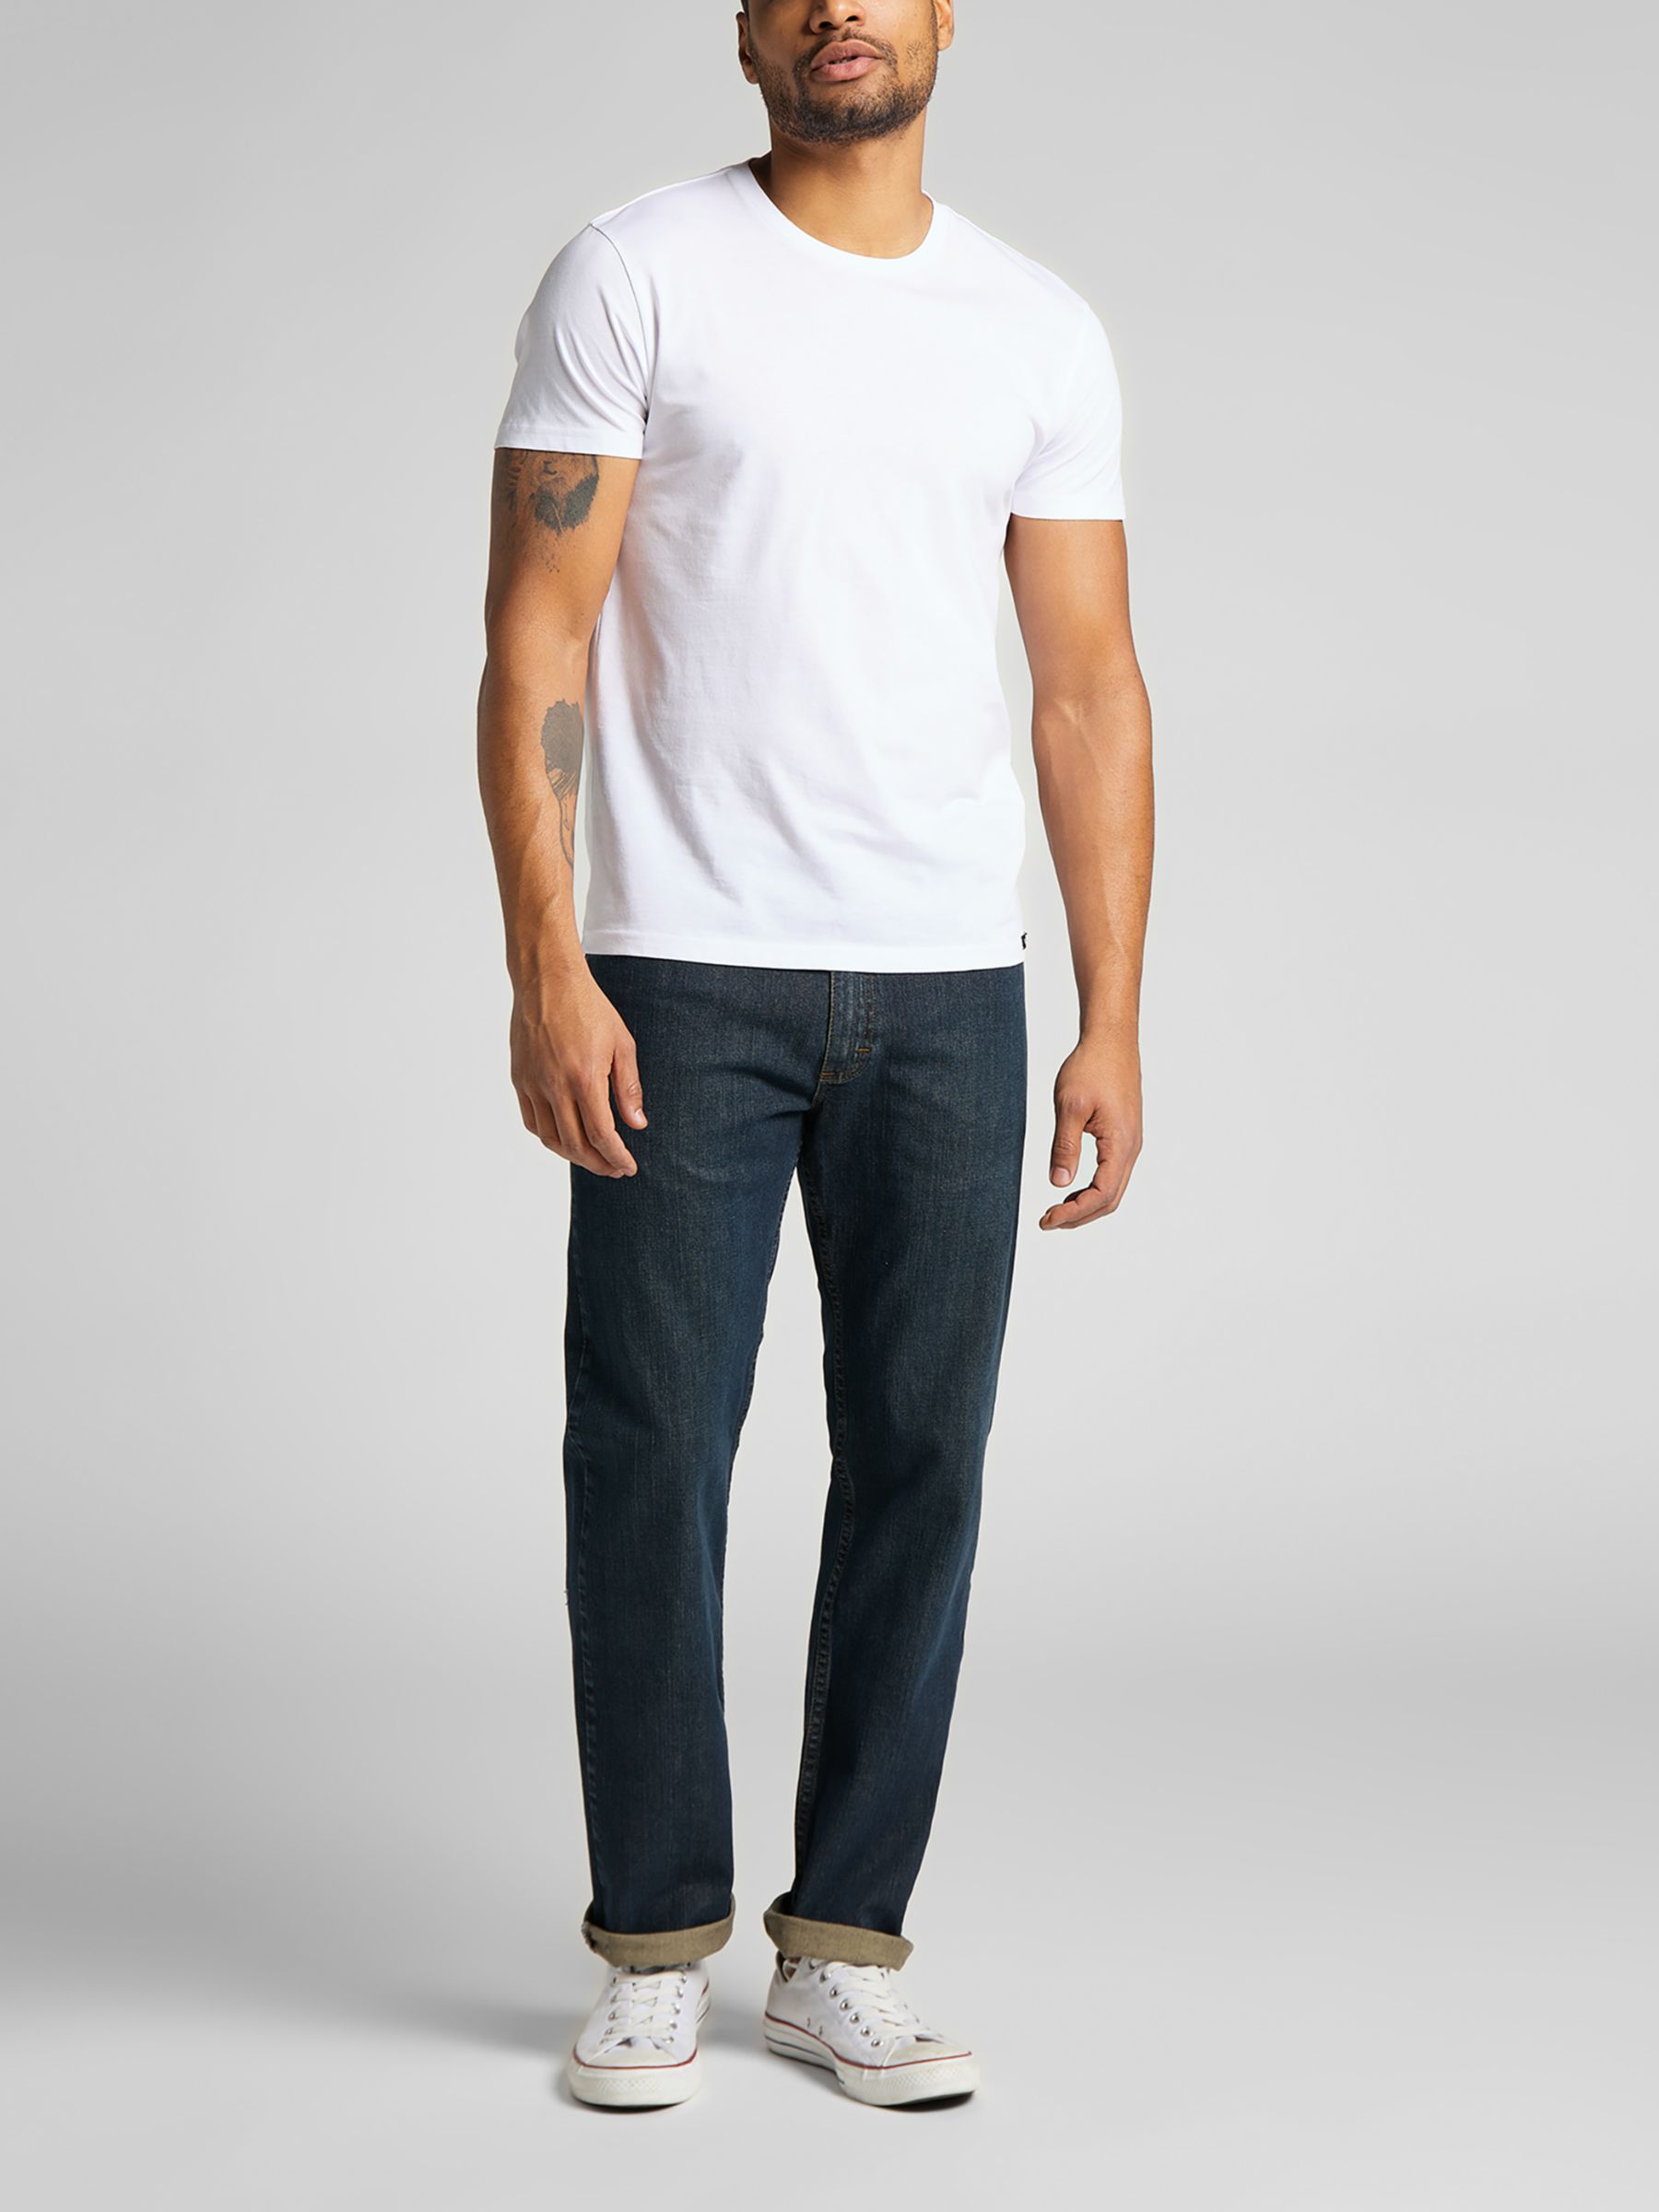 Lee Regular Fit Cotton T-Shirt, Pack of 2, Black/White at John Lewis ...